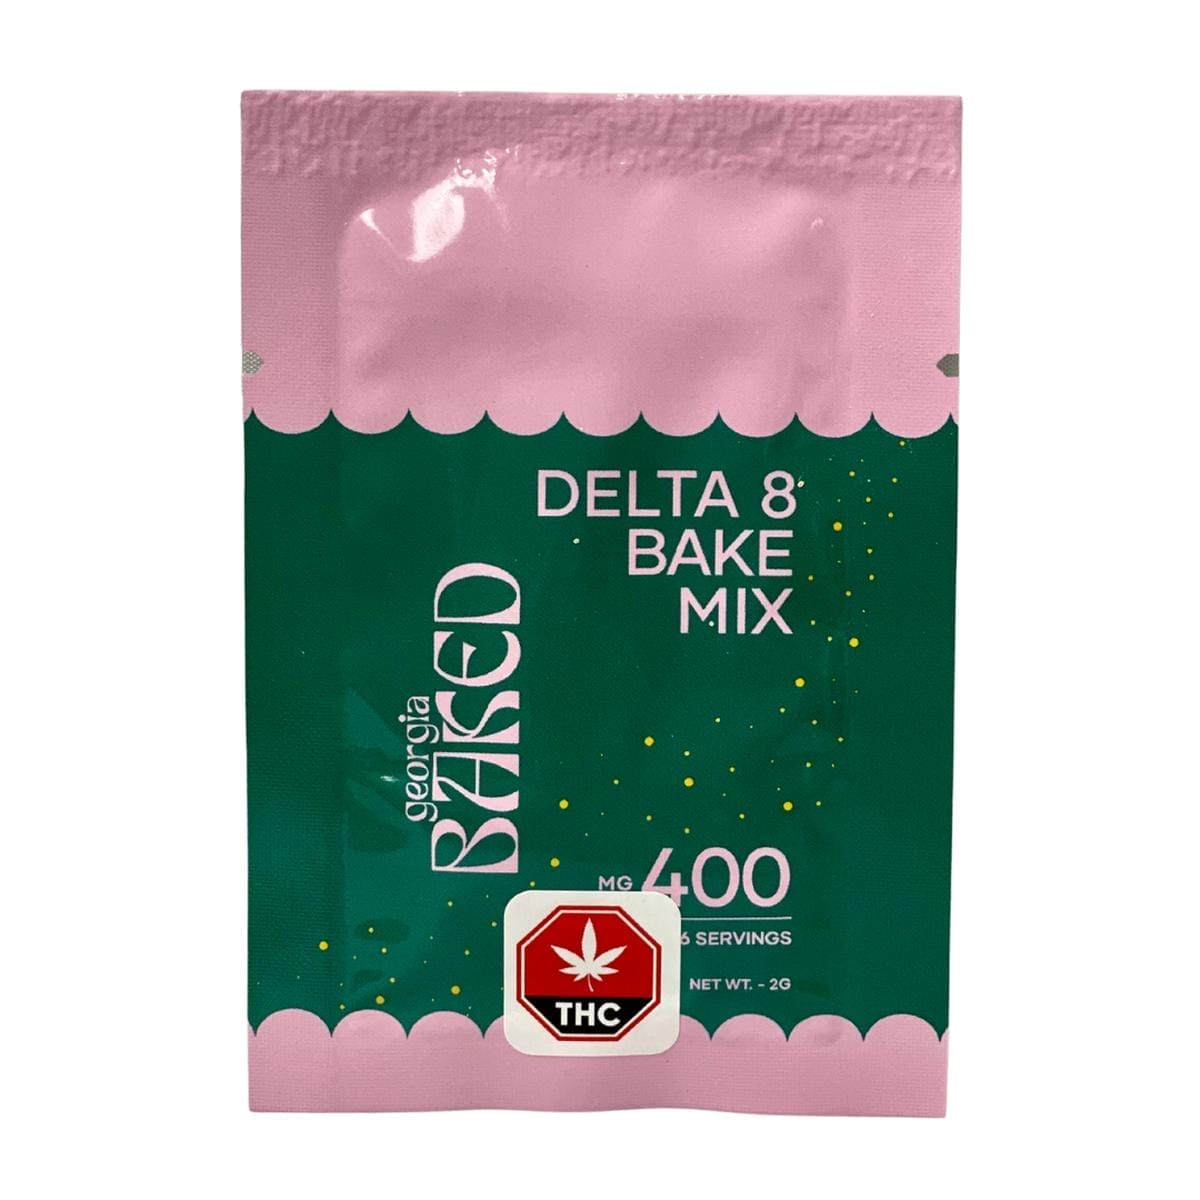 GHC 400mg Delta 8 Bake Mix